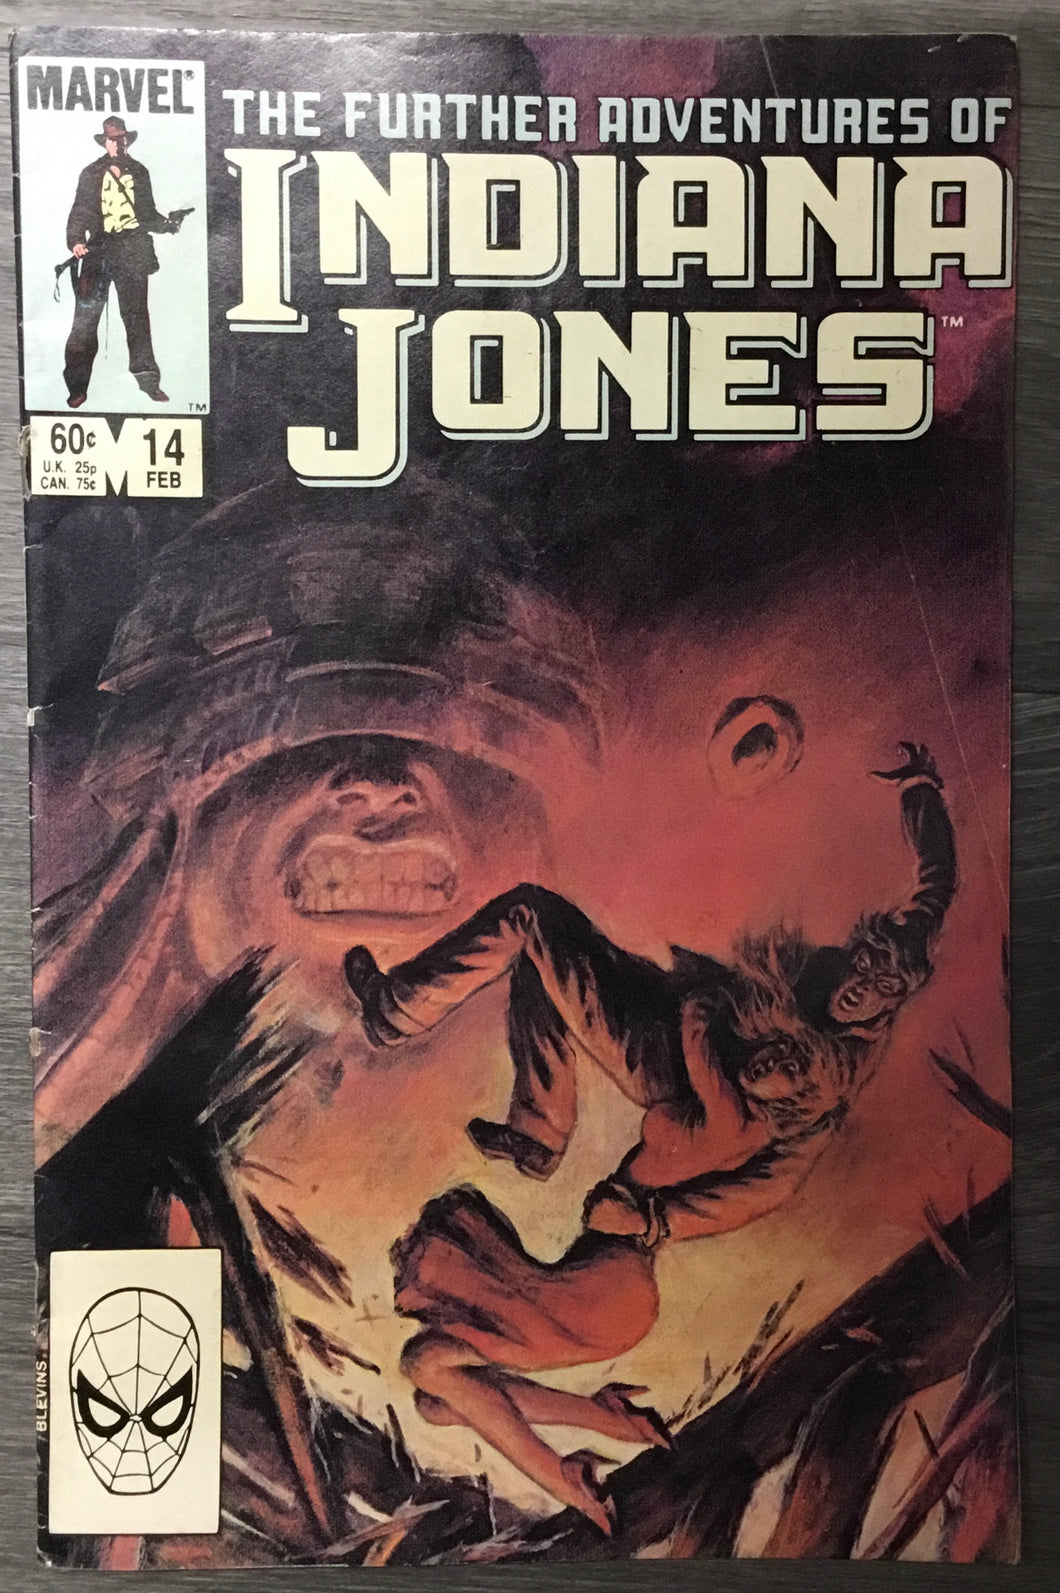 The Further Adventures of Indiana Jones No. #14 1984 Marvel Comics